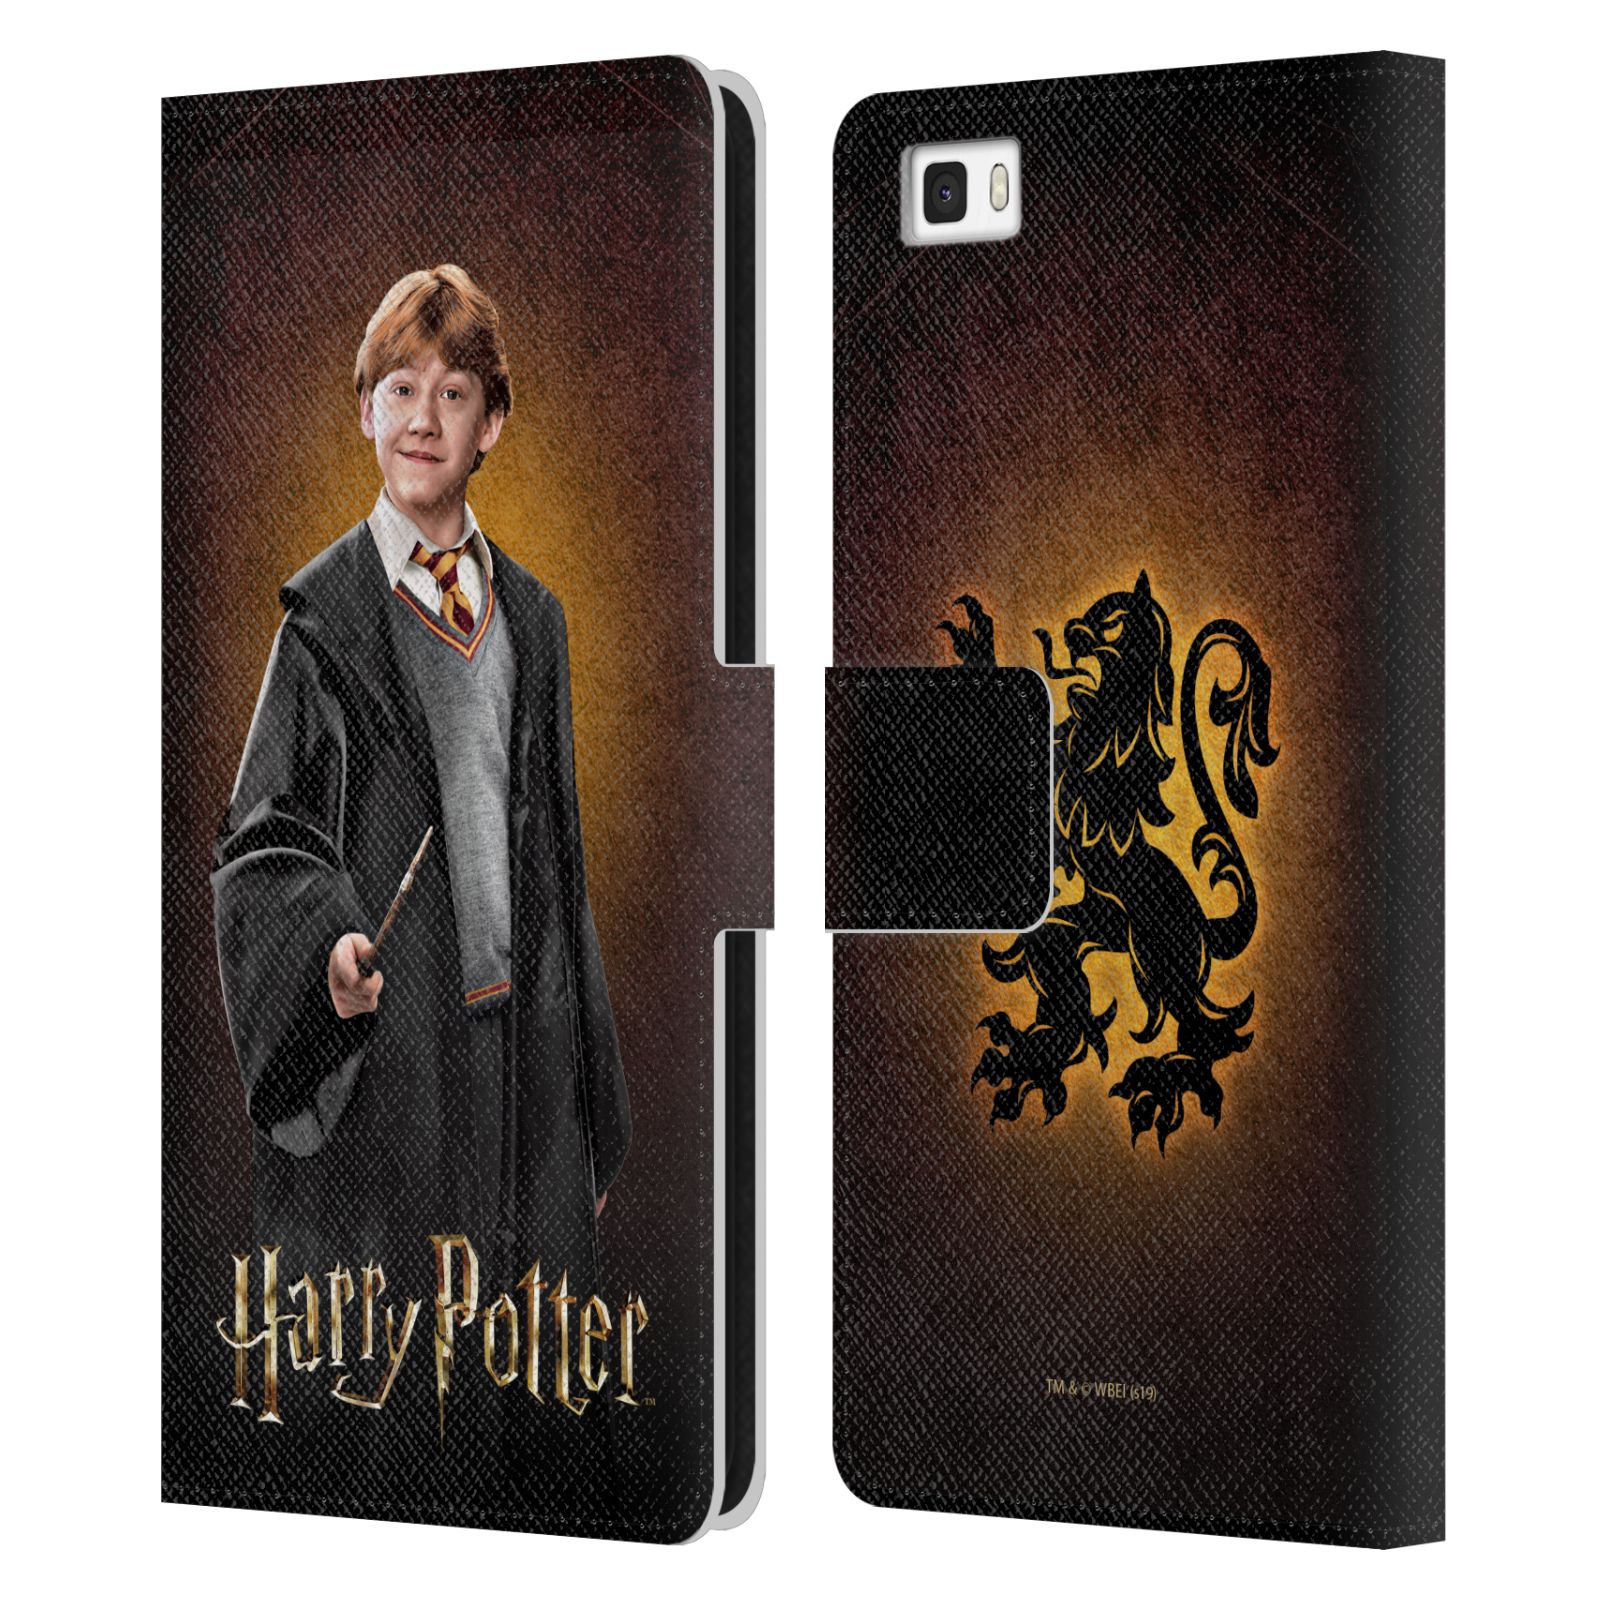 Pouzdro na mobil Huawei P8 LITE - HEAD CASE - Harry Potter - Ron Weasley portrét